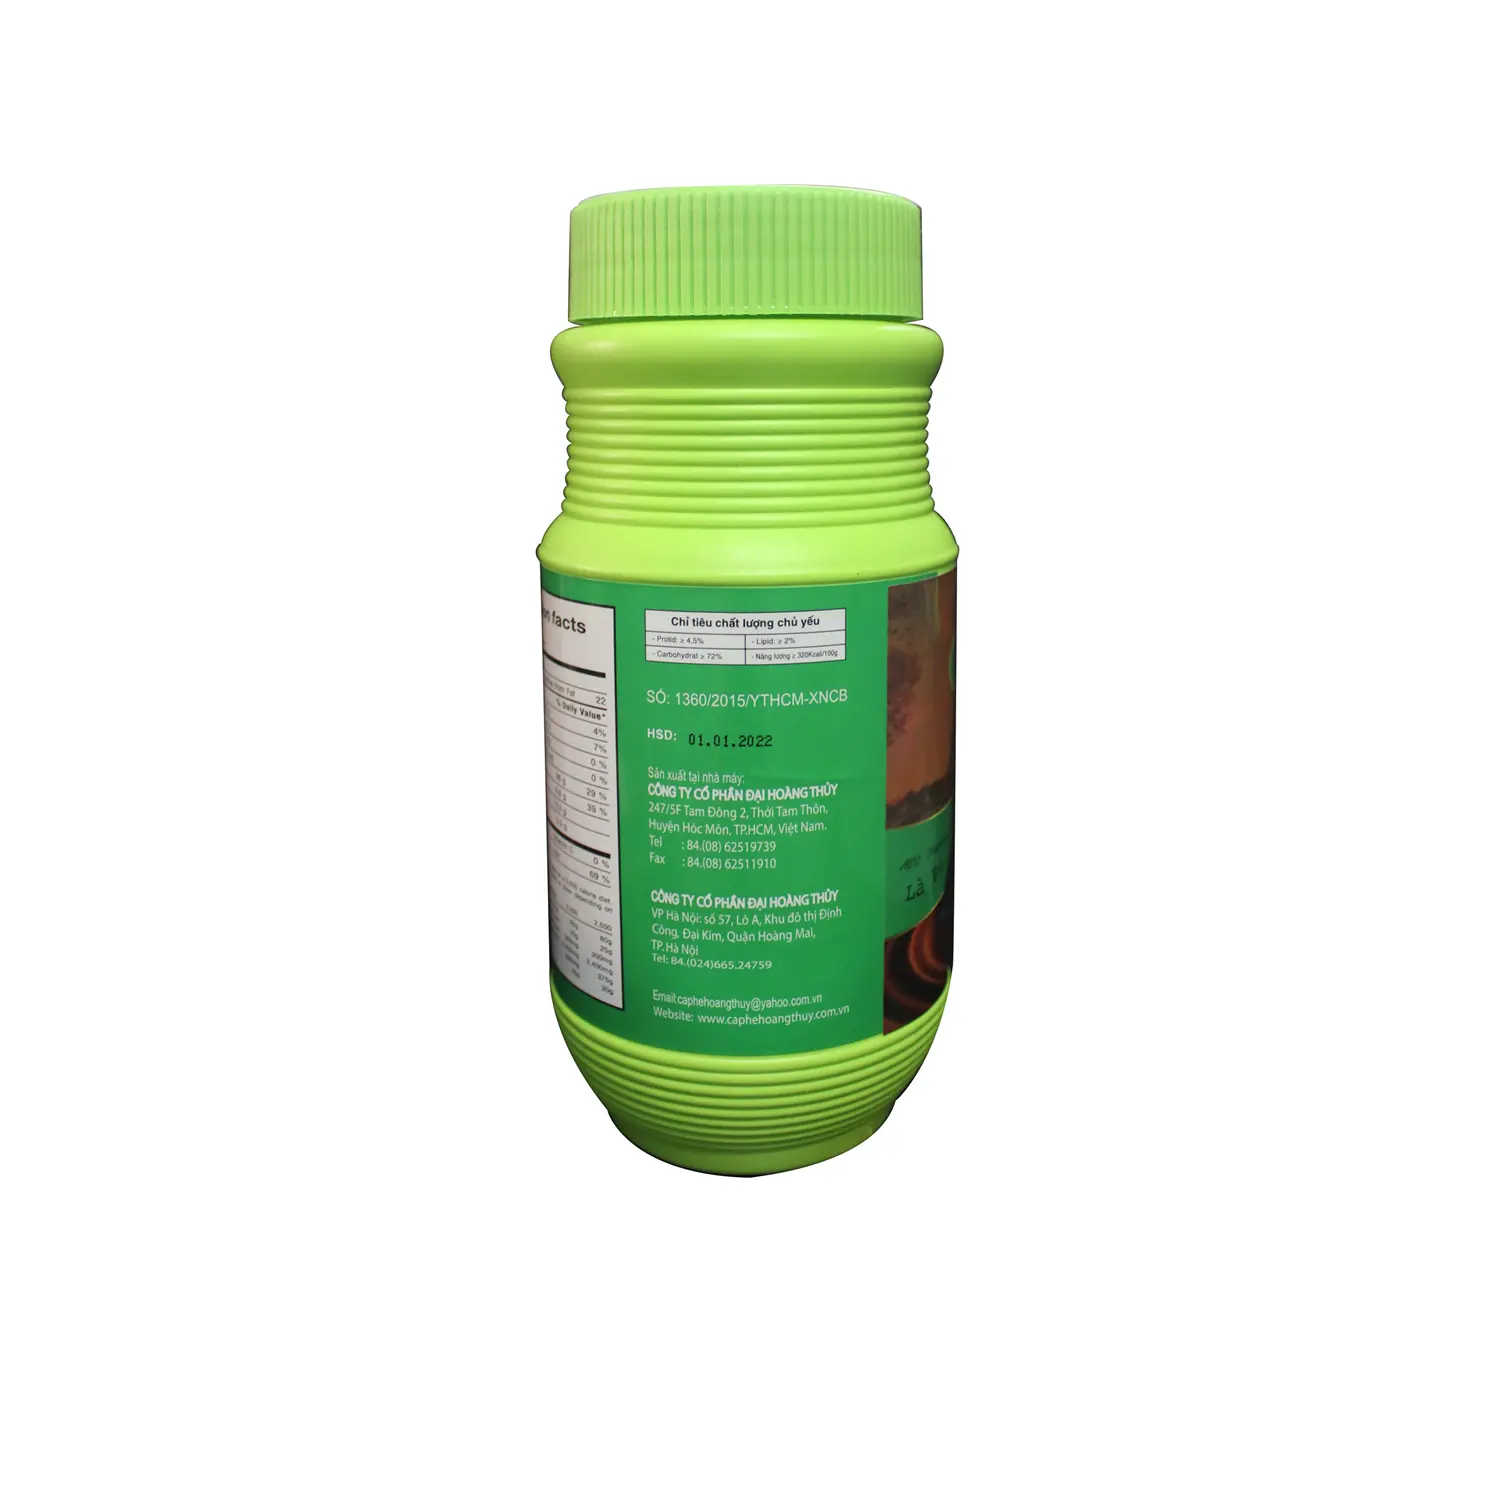 Порошковый напиток 3 в 1 Мгновенное какао светло-зеленая банка 500 г коричневого вкусного смешанного вкуса органических ингредиентов какао